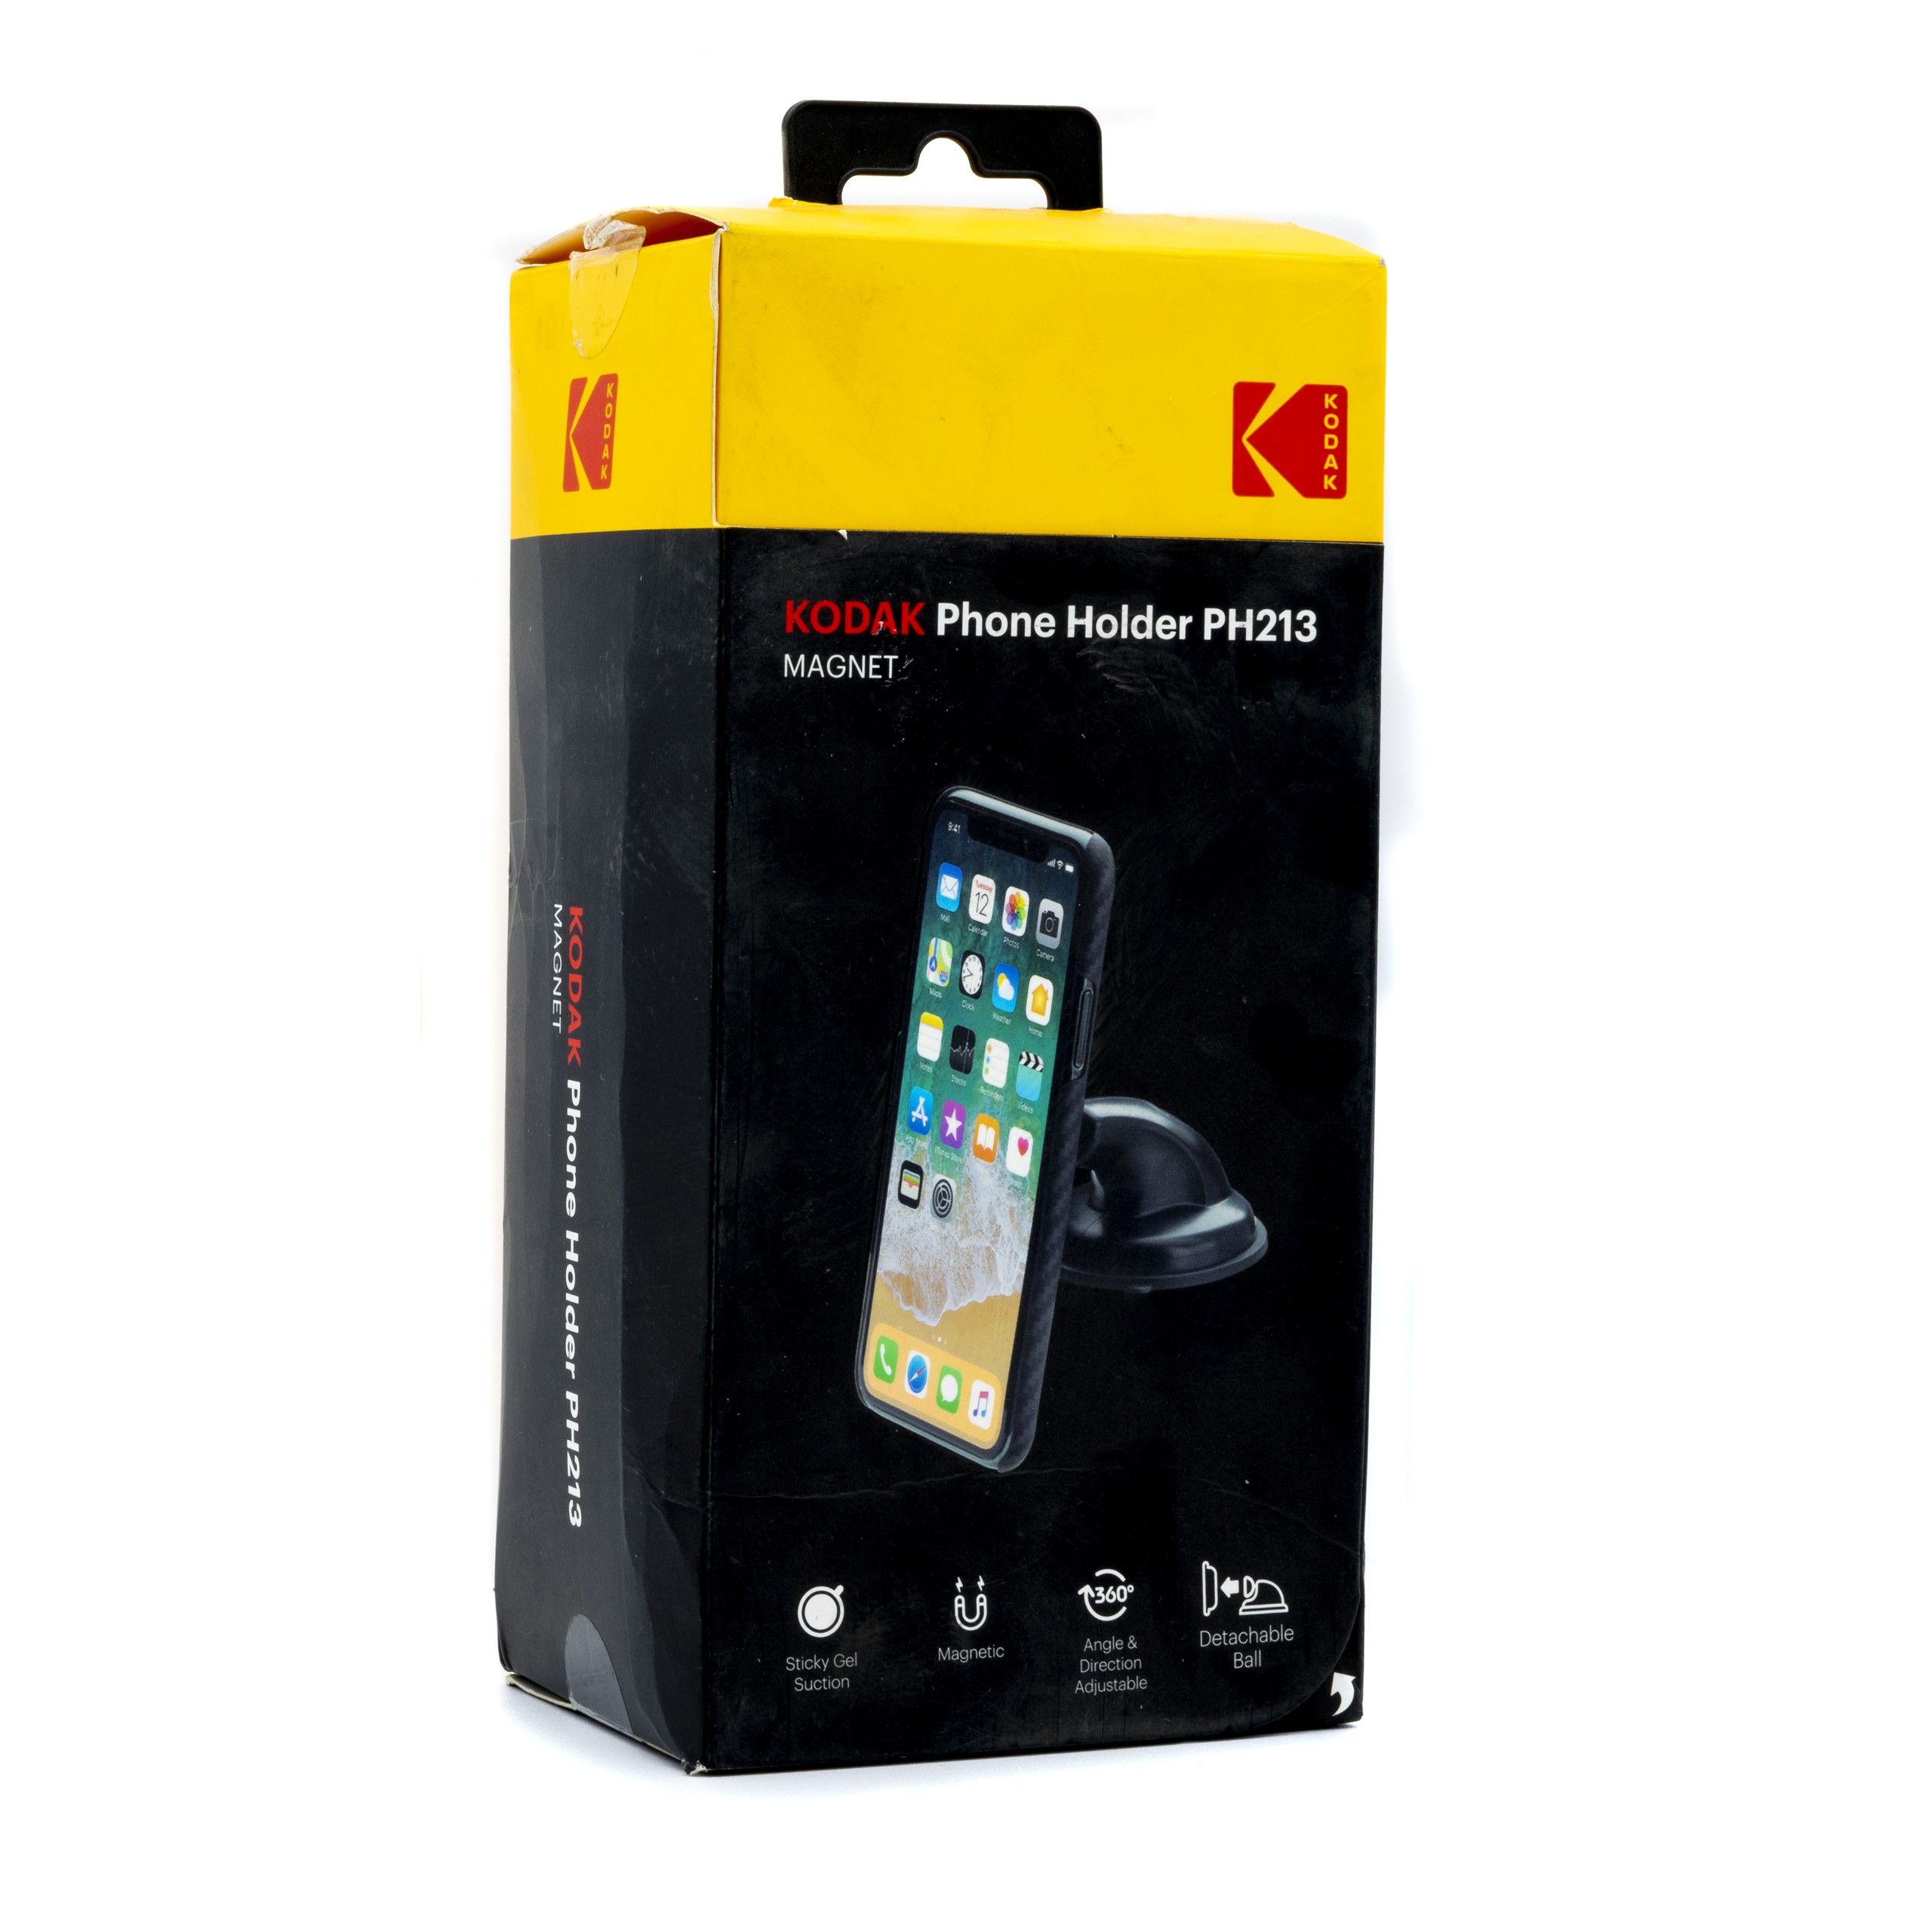 PH213 KODAK Magnet Phone Holder Magnet